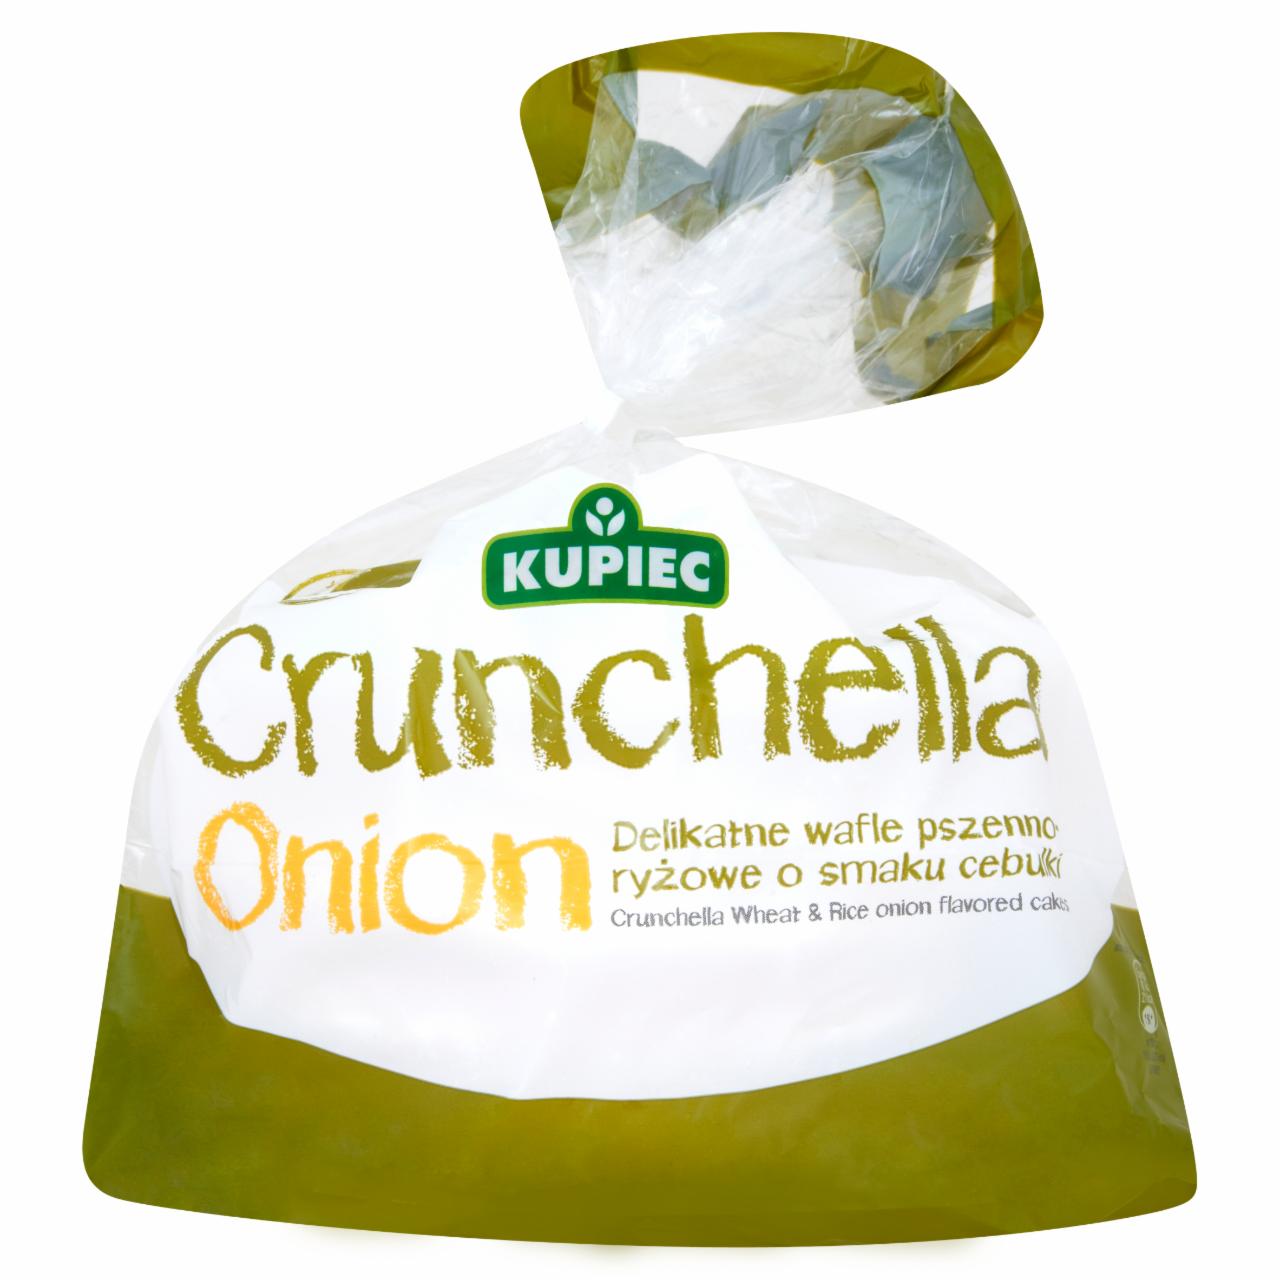 Zdjęcia - Kupiec Crunchella Onion Delikatne wafle pszenno-ryżowe o smaku cebulki 56 g